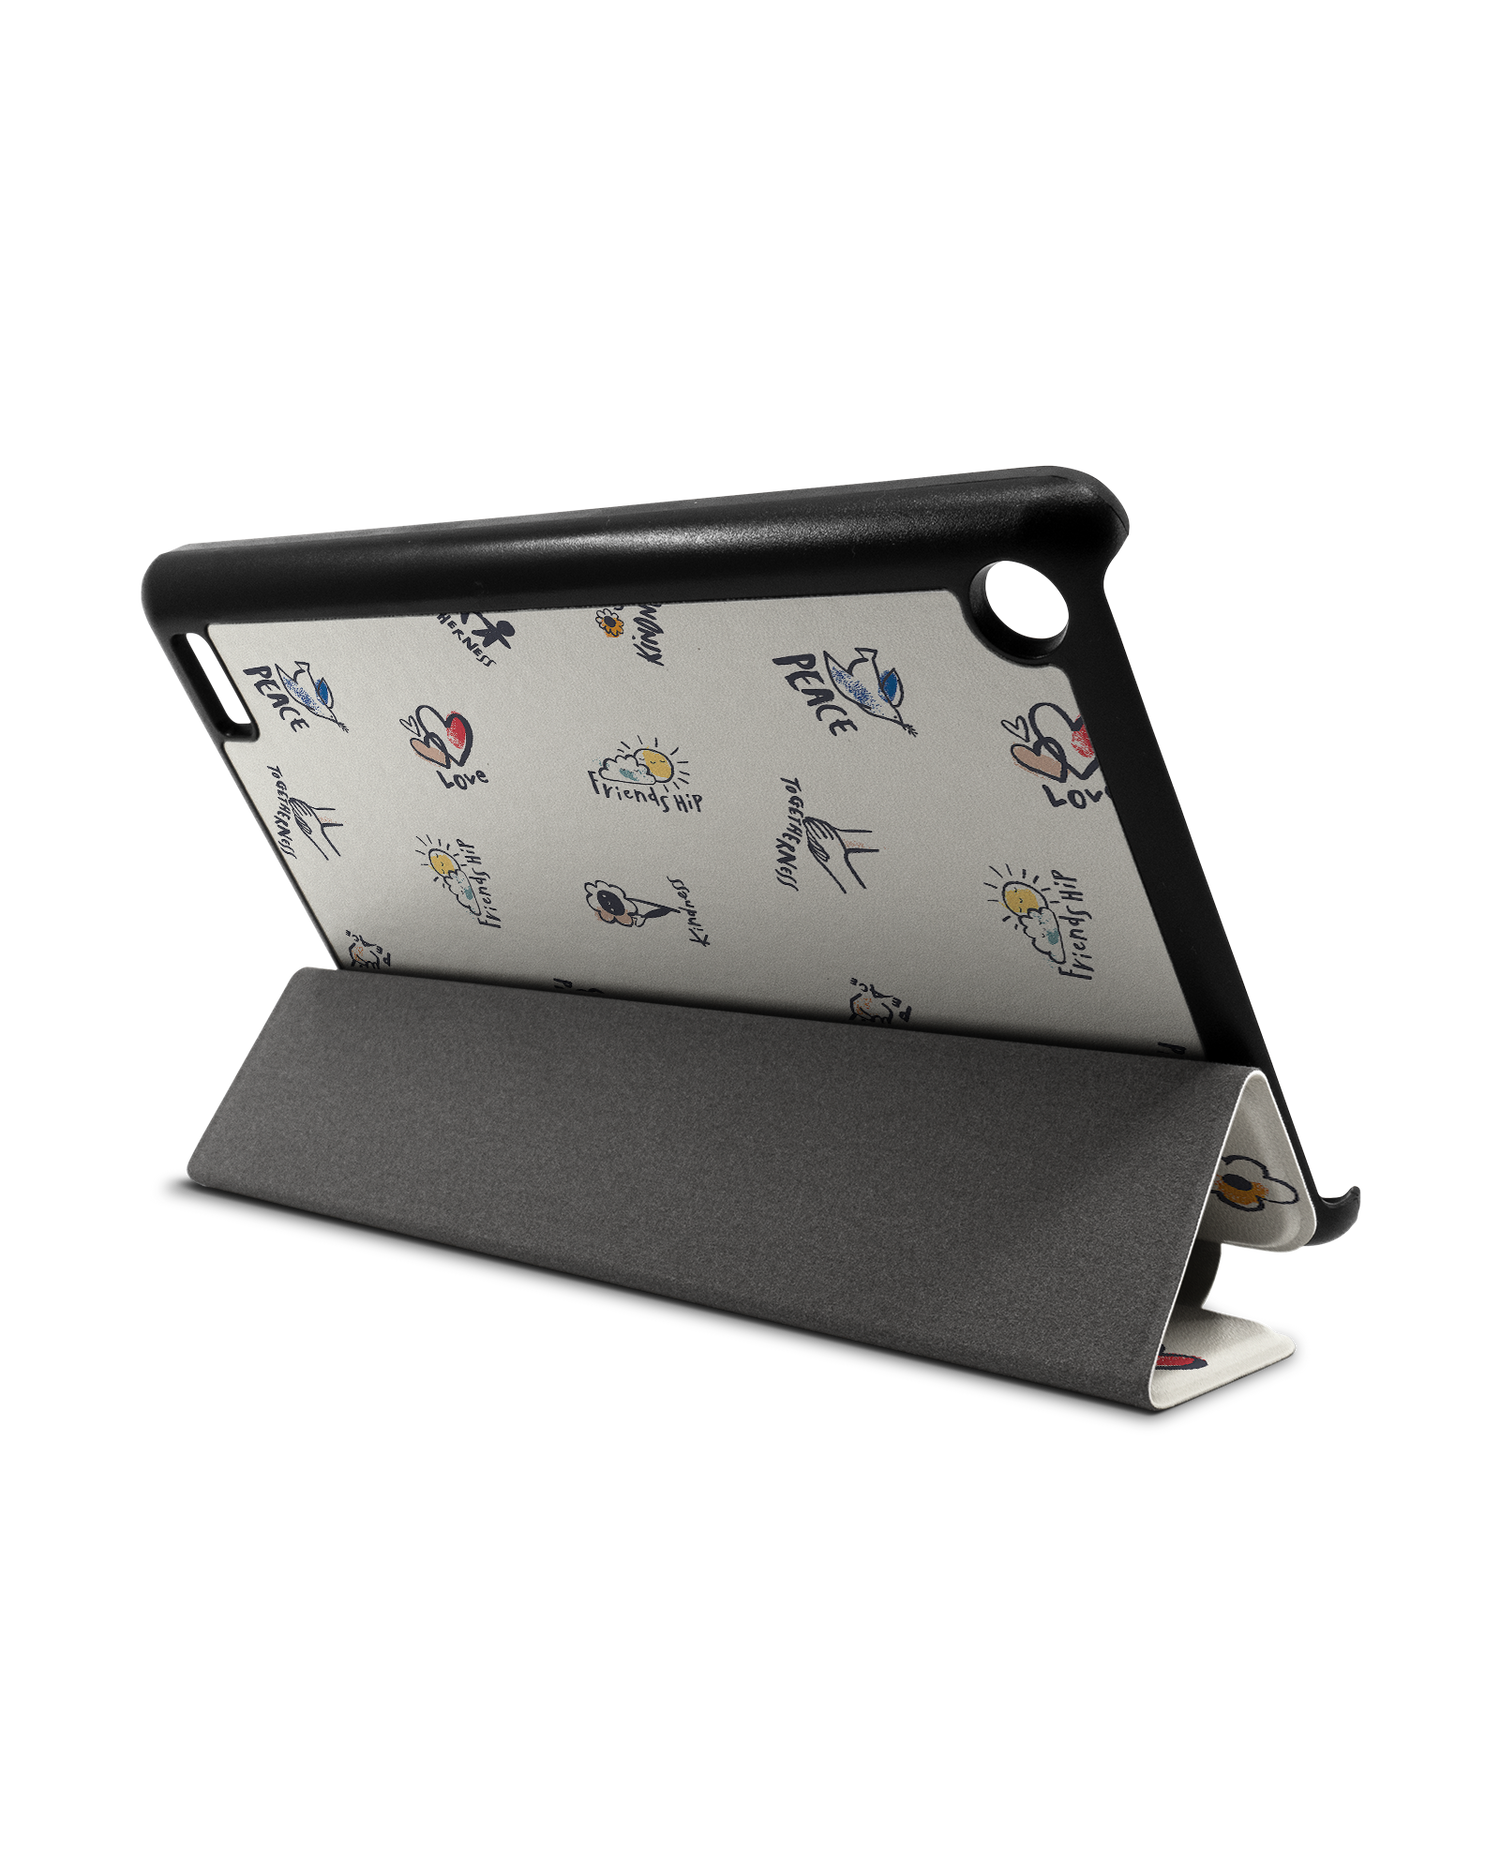 Peace And Love Tablet Smart Case für Amazon Fire 7: Aufgestellt im Querformat